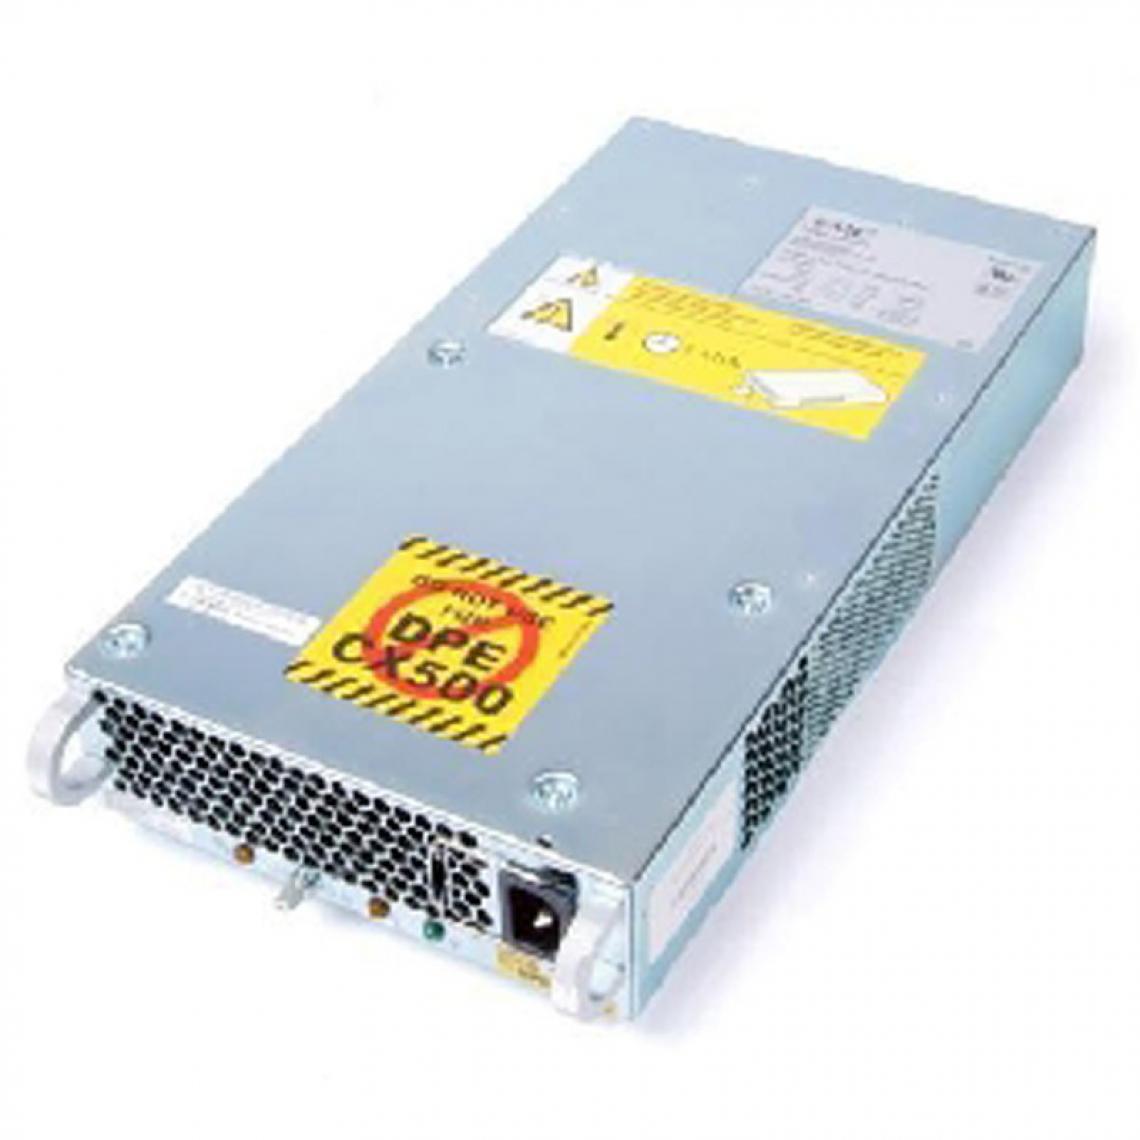 Dell - Alimentation EMC MA 01772 400 Watt 0H3186 Dell H3186 CX300 CX200 Power Supply - Alimentation modulaire